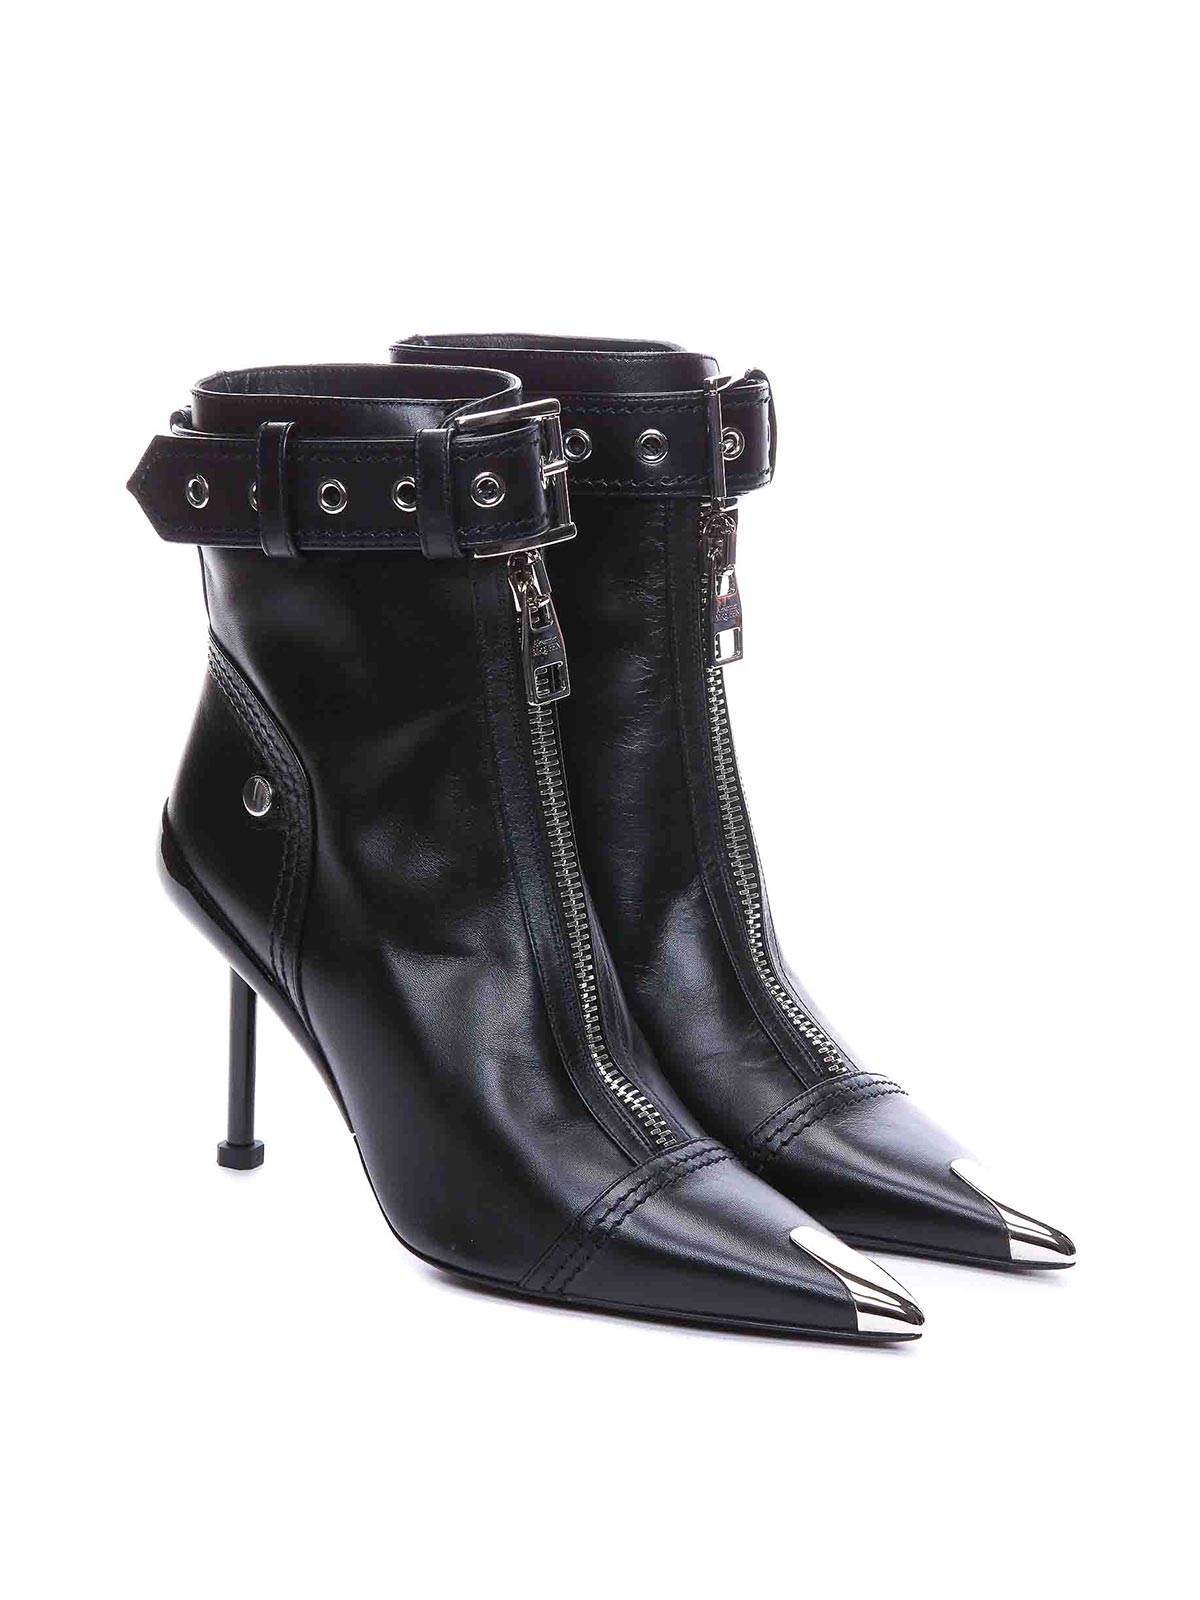 Alexander McQueen Heels for Women, Online Sale up to 70% off